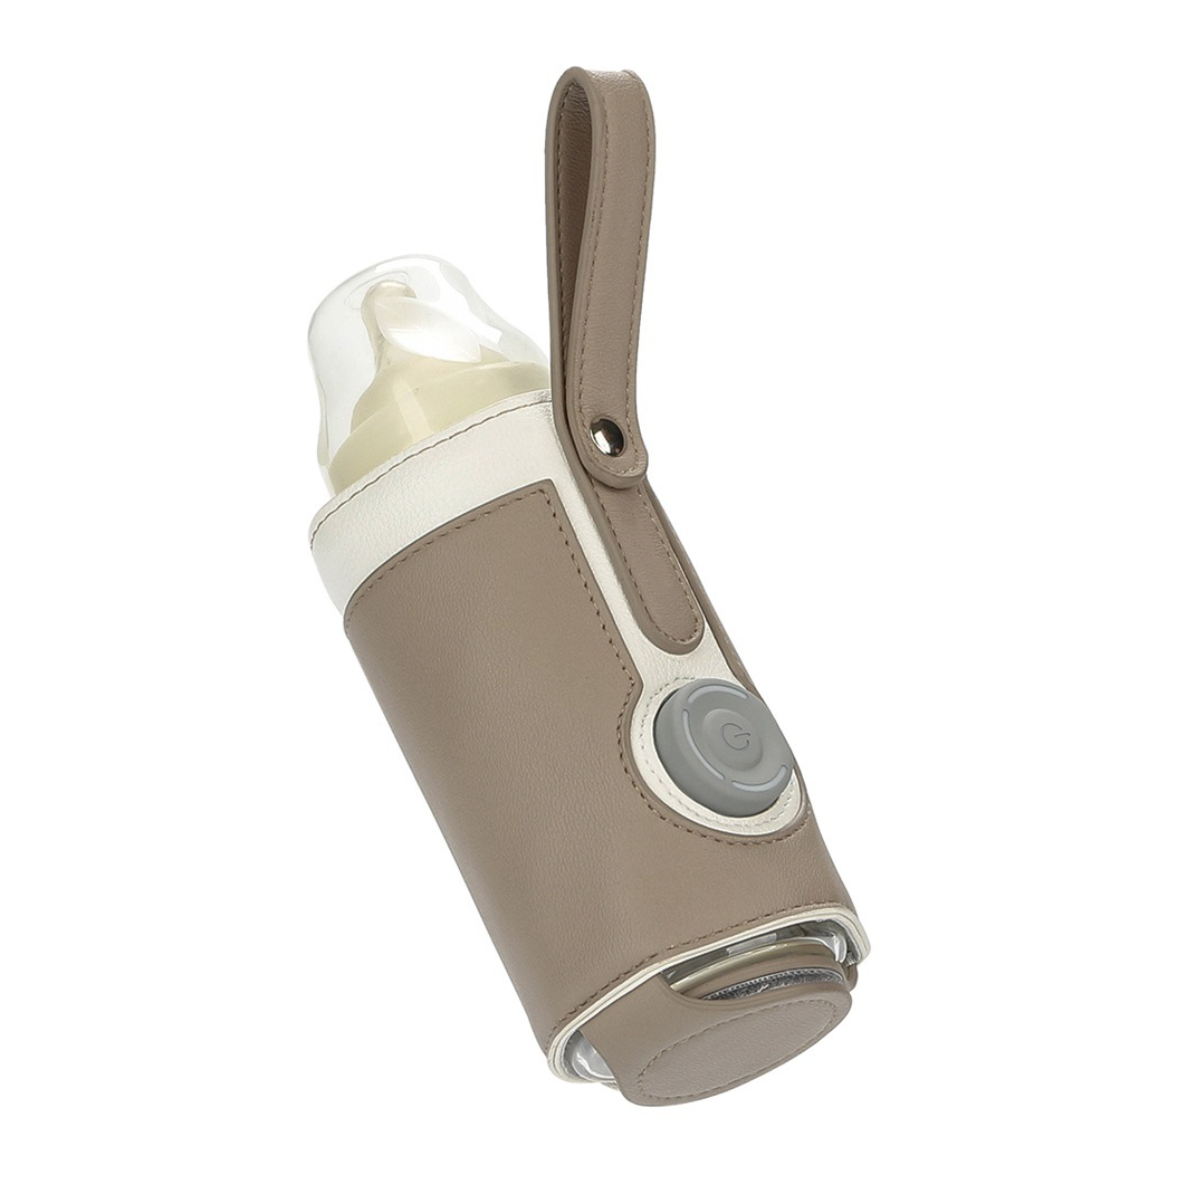 einfach&praktisch-5V Braun Thermal Babykostwärmer Bottle Smart Tragbar&elegant, UWOT sicher&kontrollierbar, Cover: